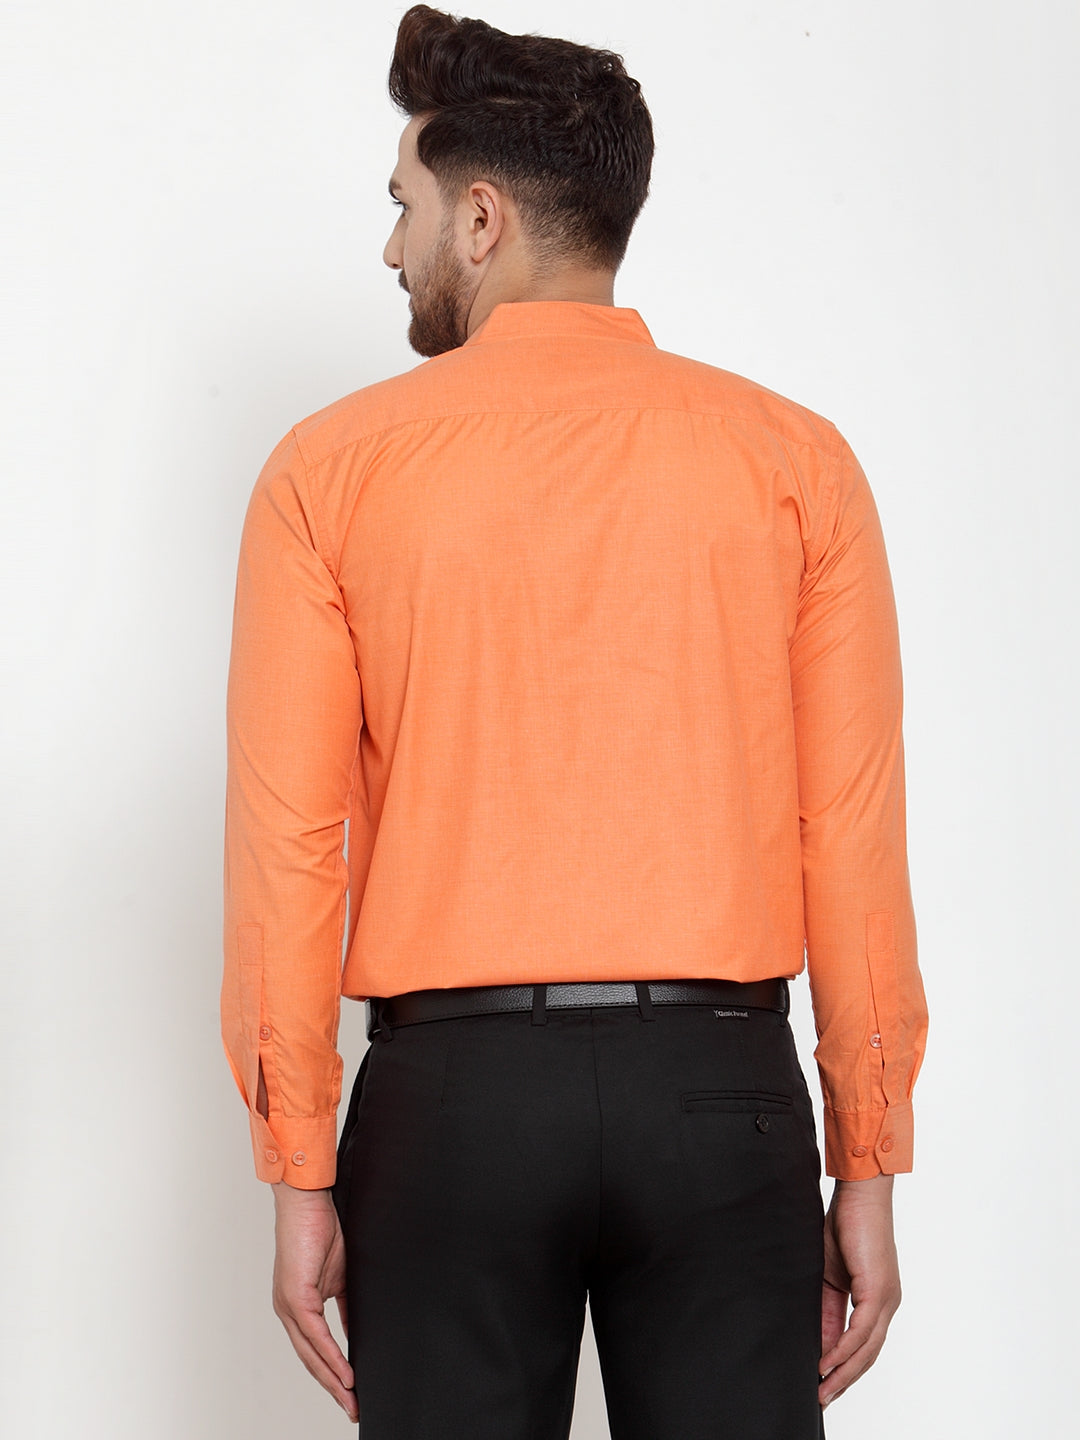 Men's Orange Cotton Solid Mandarin Collar Formal Shirts ( SF 757Orange ) - Jainish